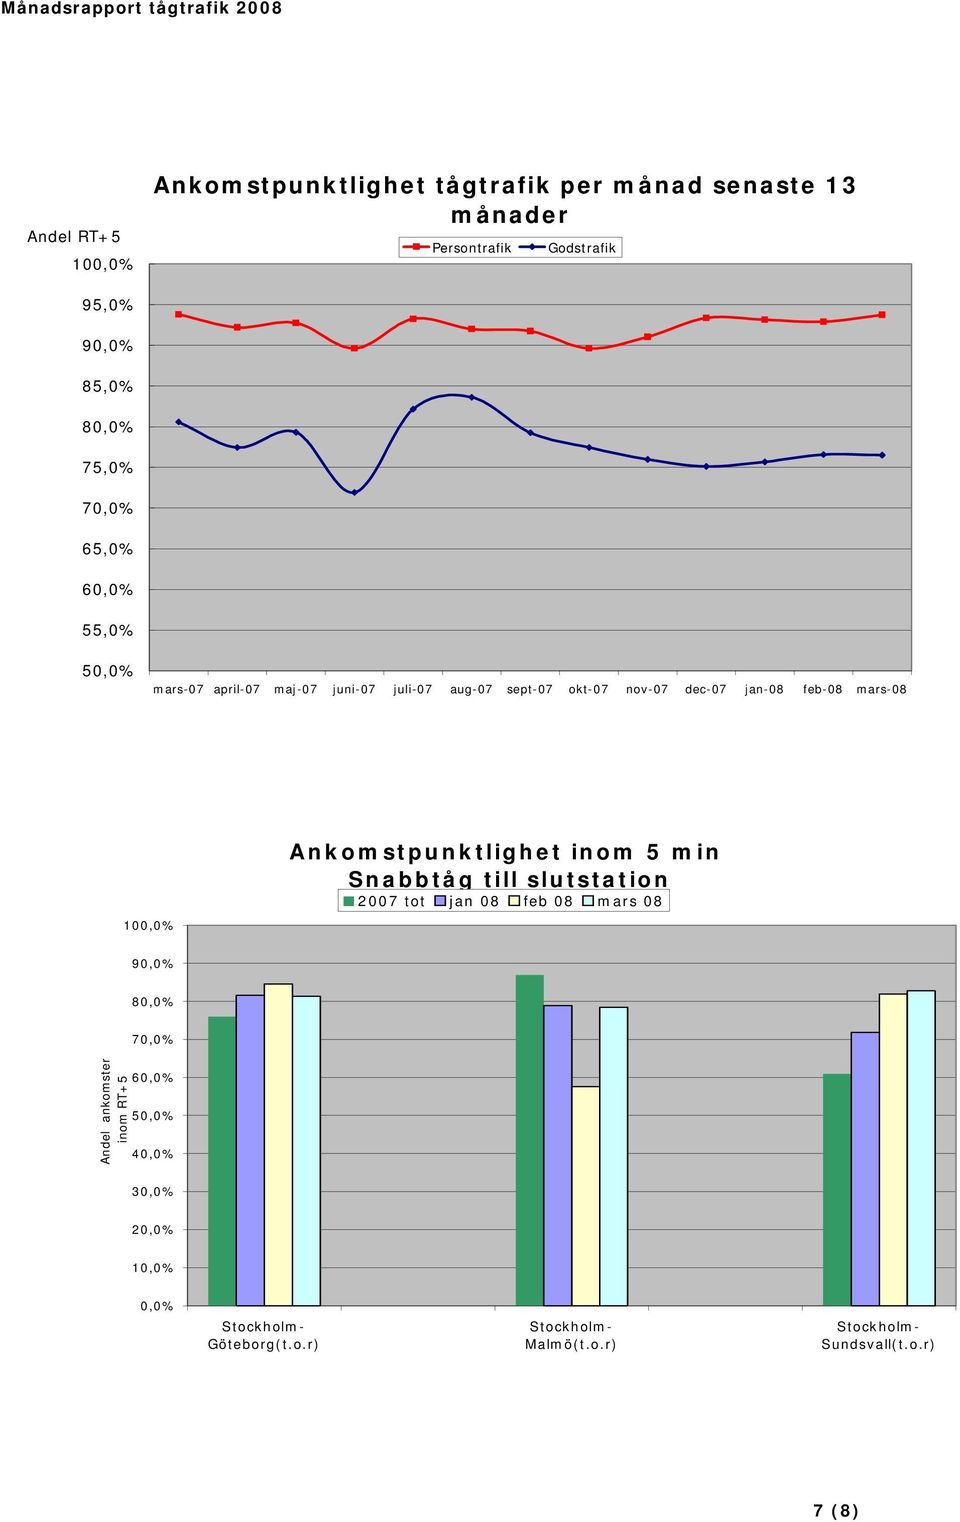 100,0% Ankomstpunktlighet inom 5 min Snabbtåg till slutstation 2007 tot jan 08 feb 08 mars 08 90,0% 80,0% 70,0% Andel ankomster